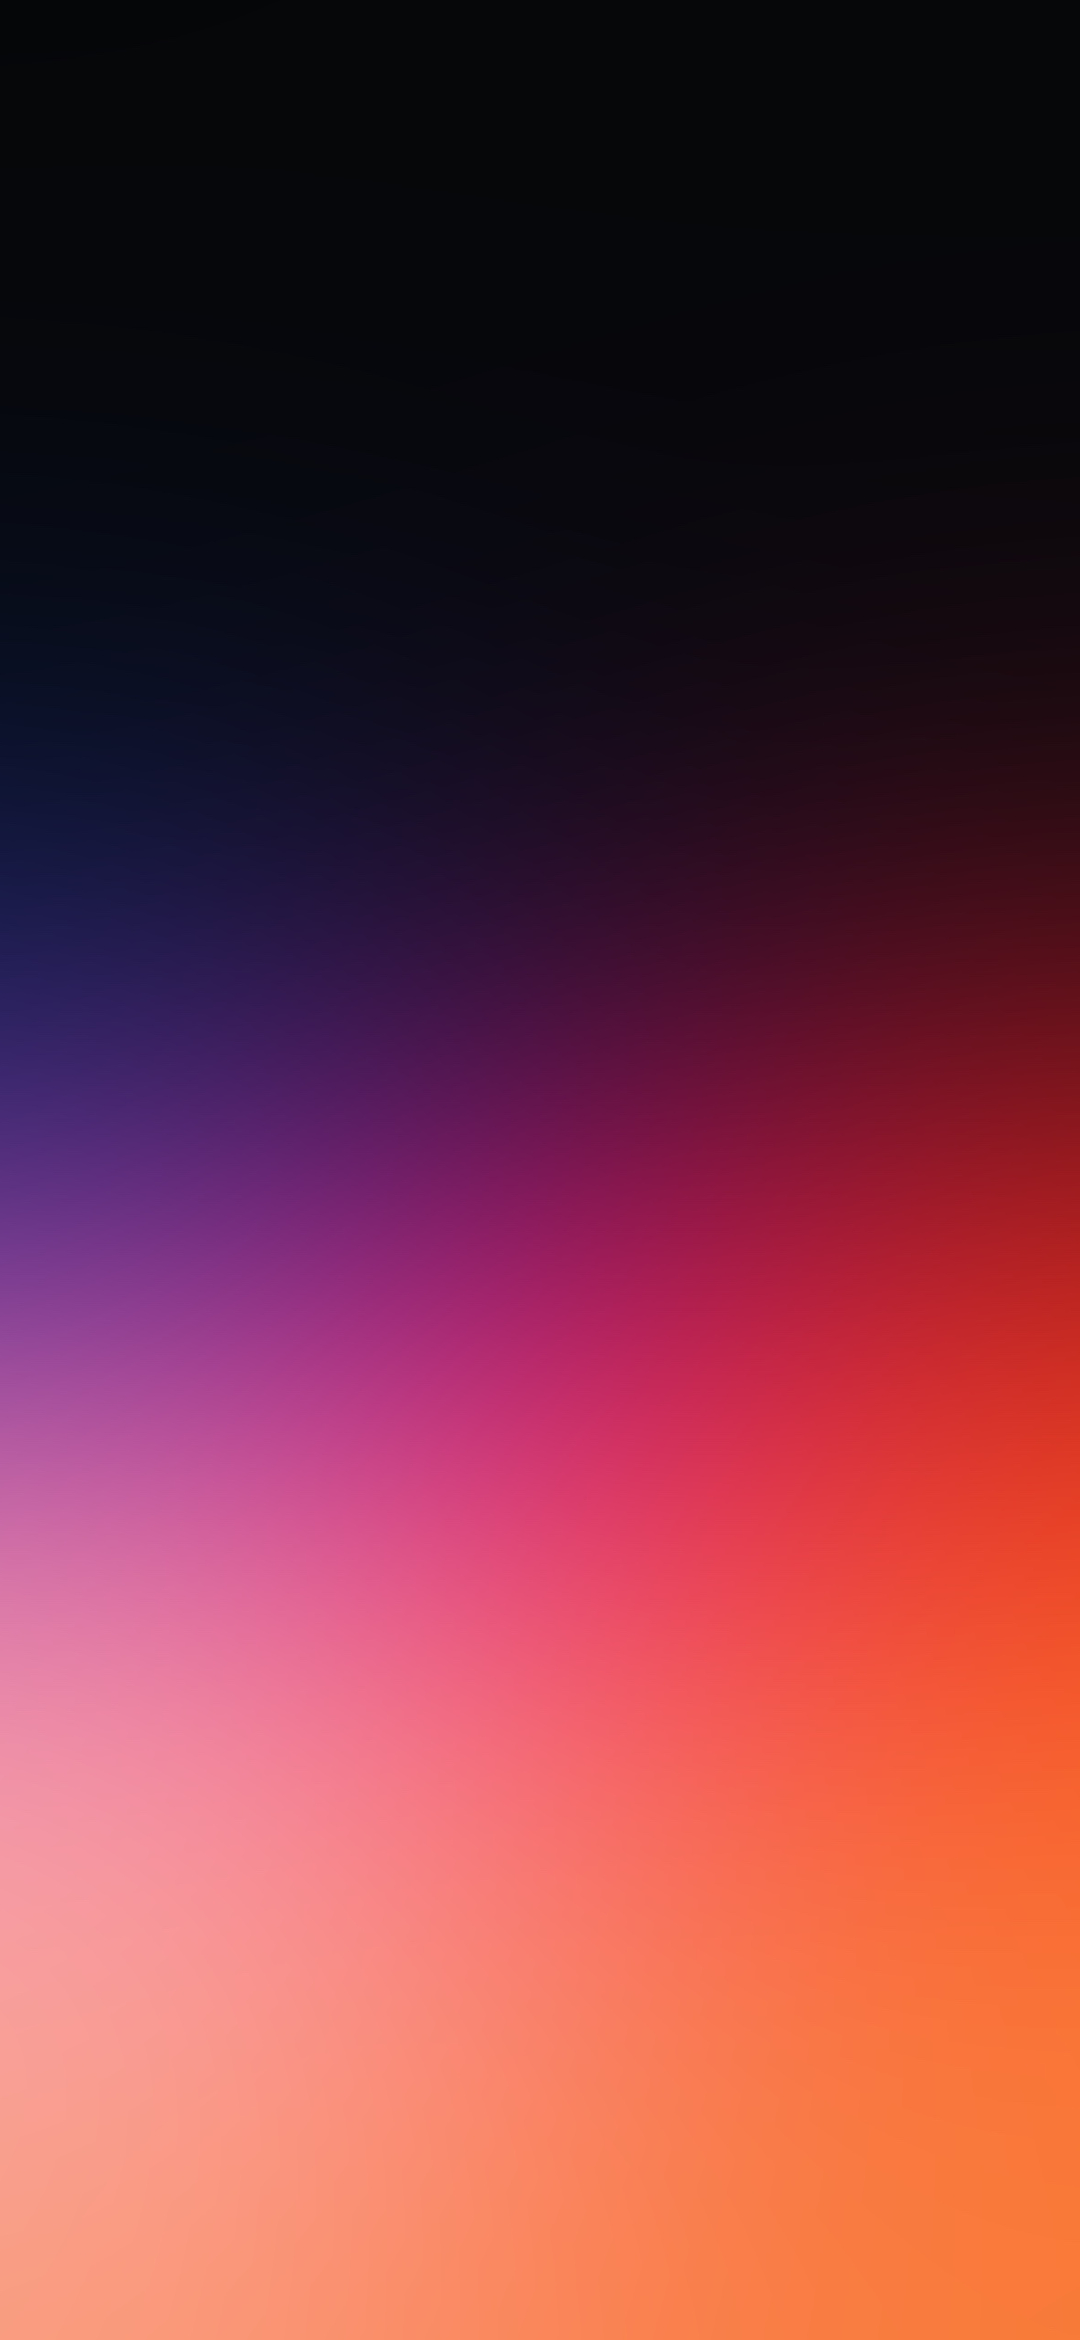 綺麗な紫とオレンジの淡いグラデーション Google Pixel 5 Android 壁紙 待ち受け スマラン